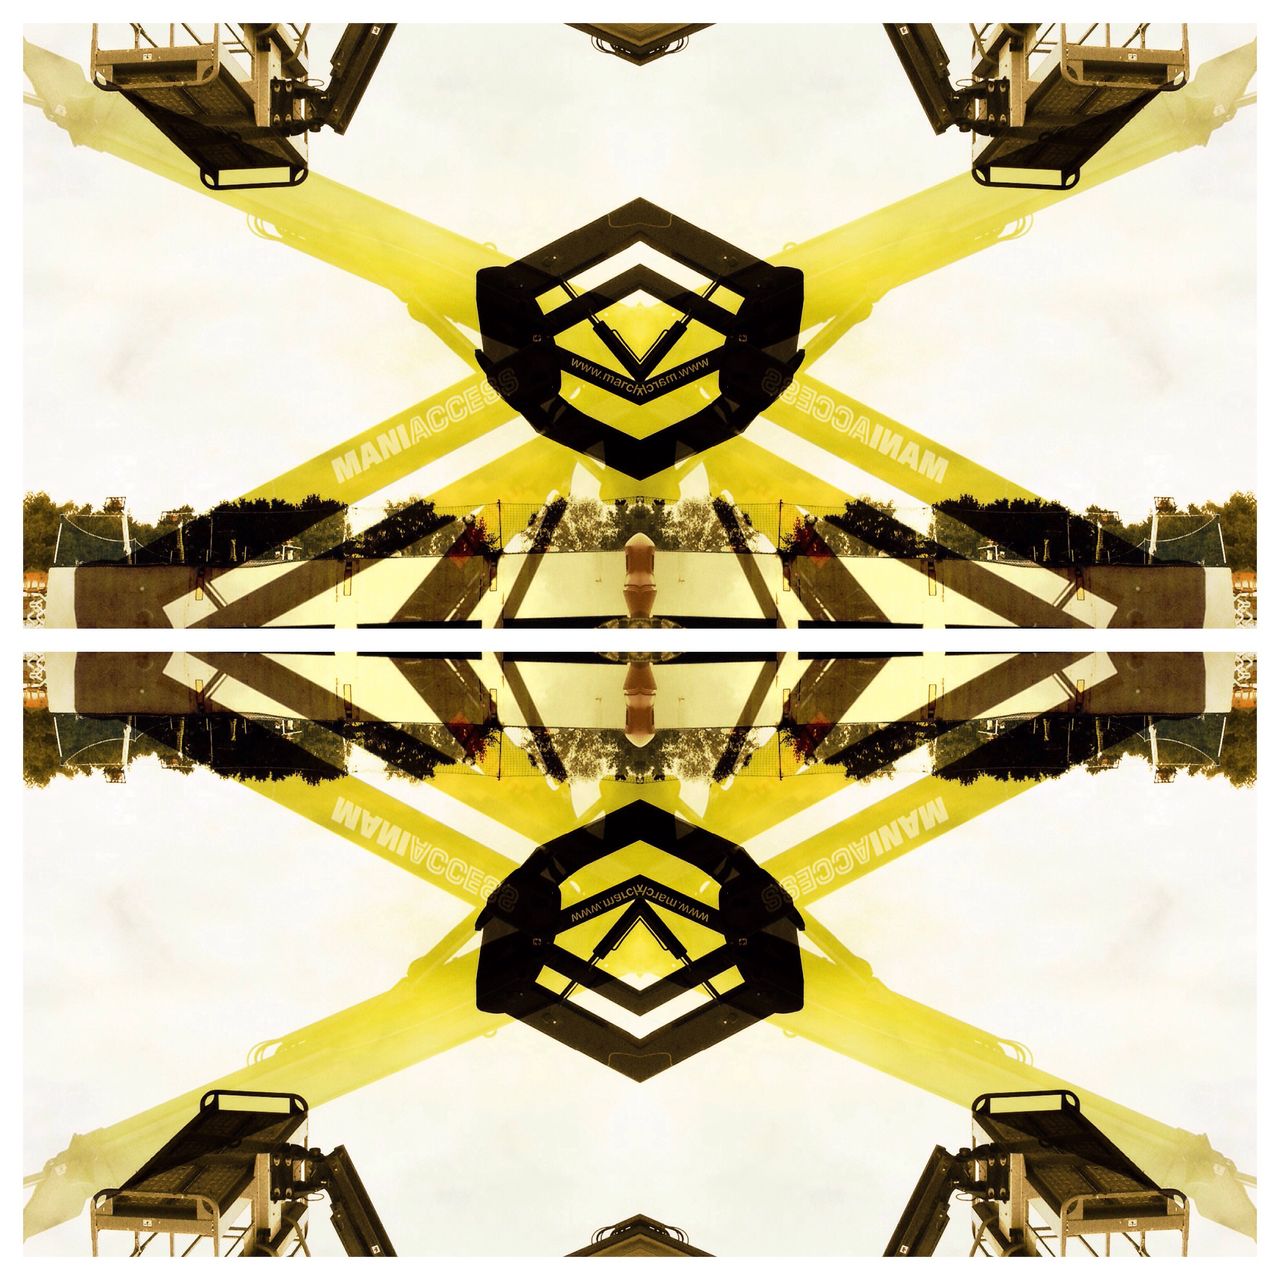 Eine gelb schwarze kaleidoskopartige Struktur mit etwas breiterem horizontalem Bruch in der Bildmitte. Das Abstrakte Bild entstand durch Zerlegung eines konkreten Bilds, das einen Motorroller auf einer Säule darstellte. Vom Original ist nichts mehr zu erkennen.